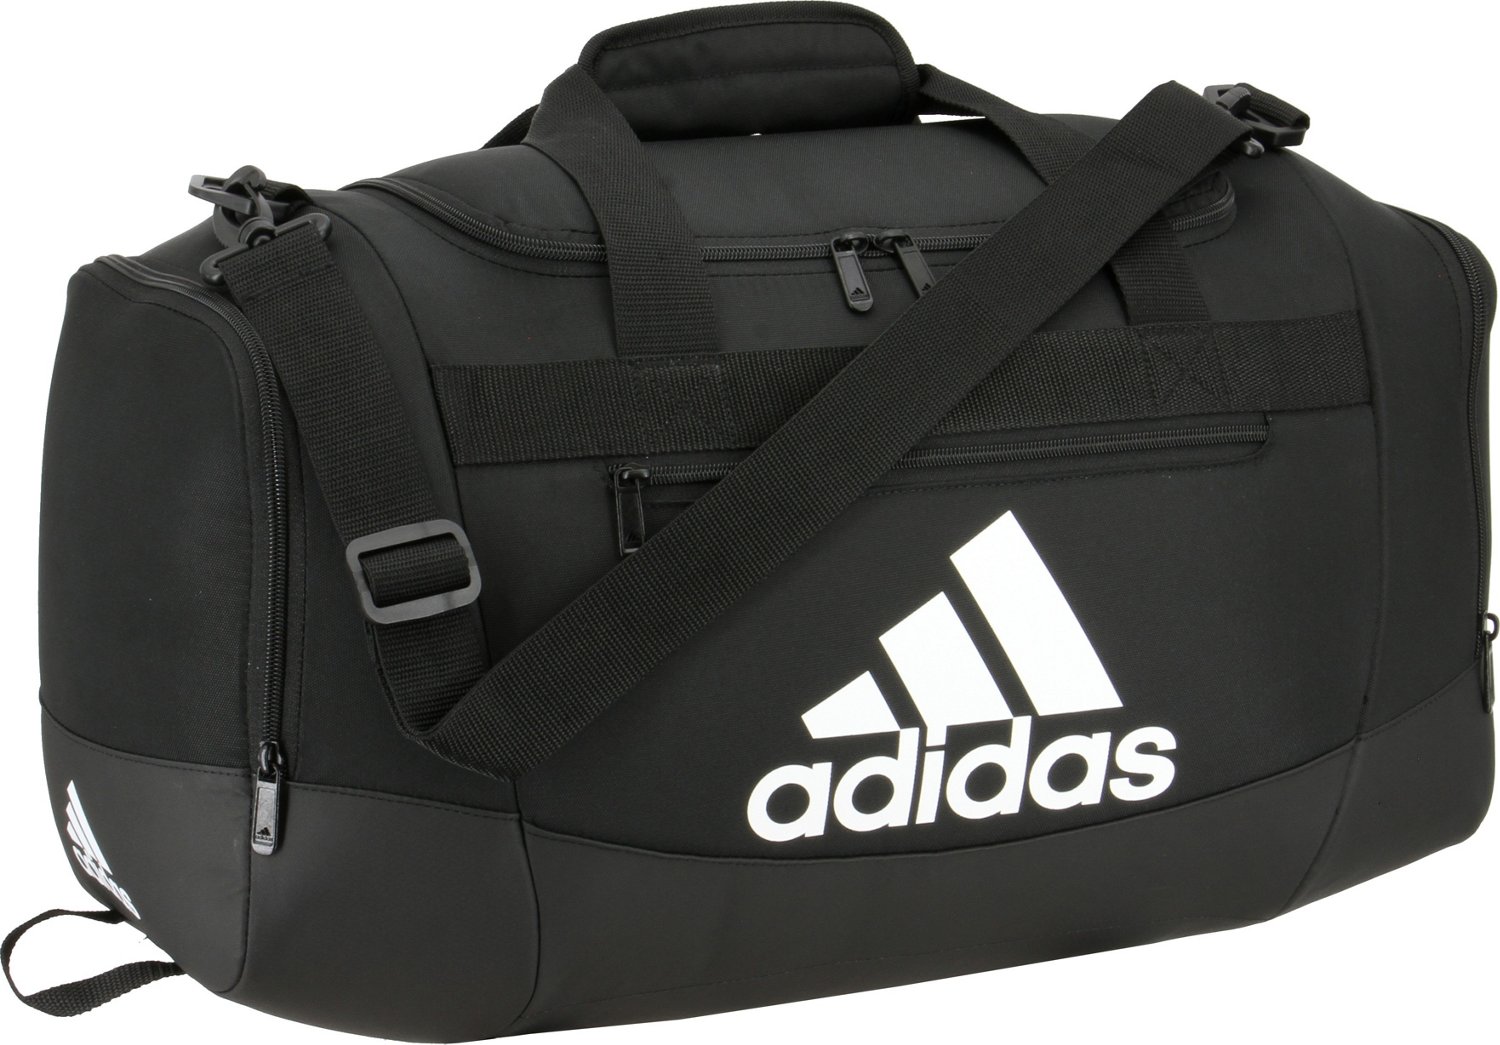 adidas Defender IV Duffel Bag | Free at